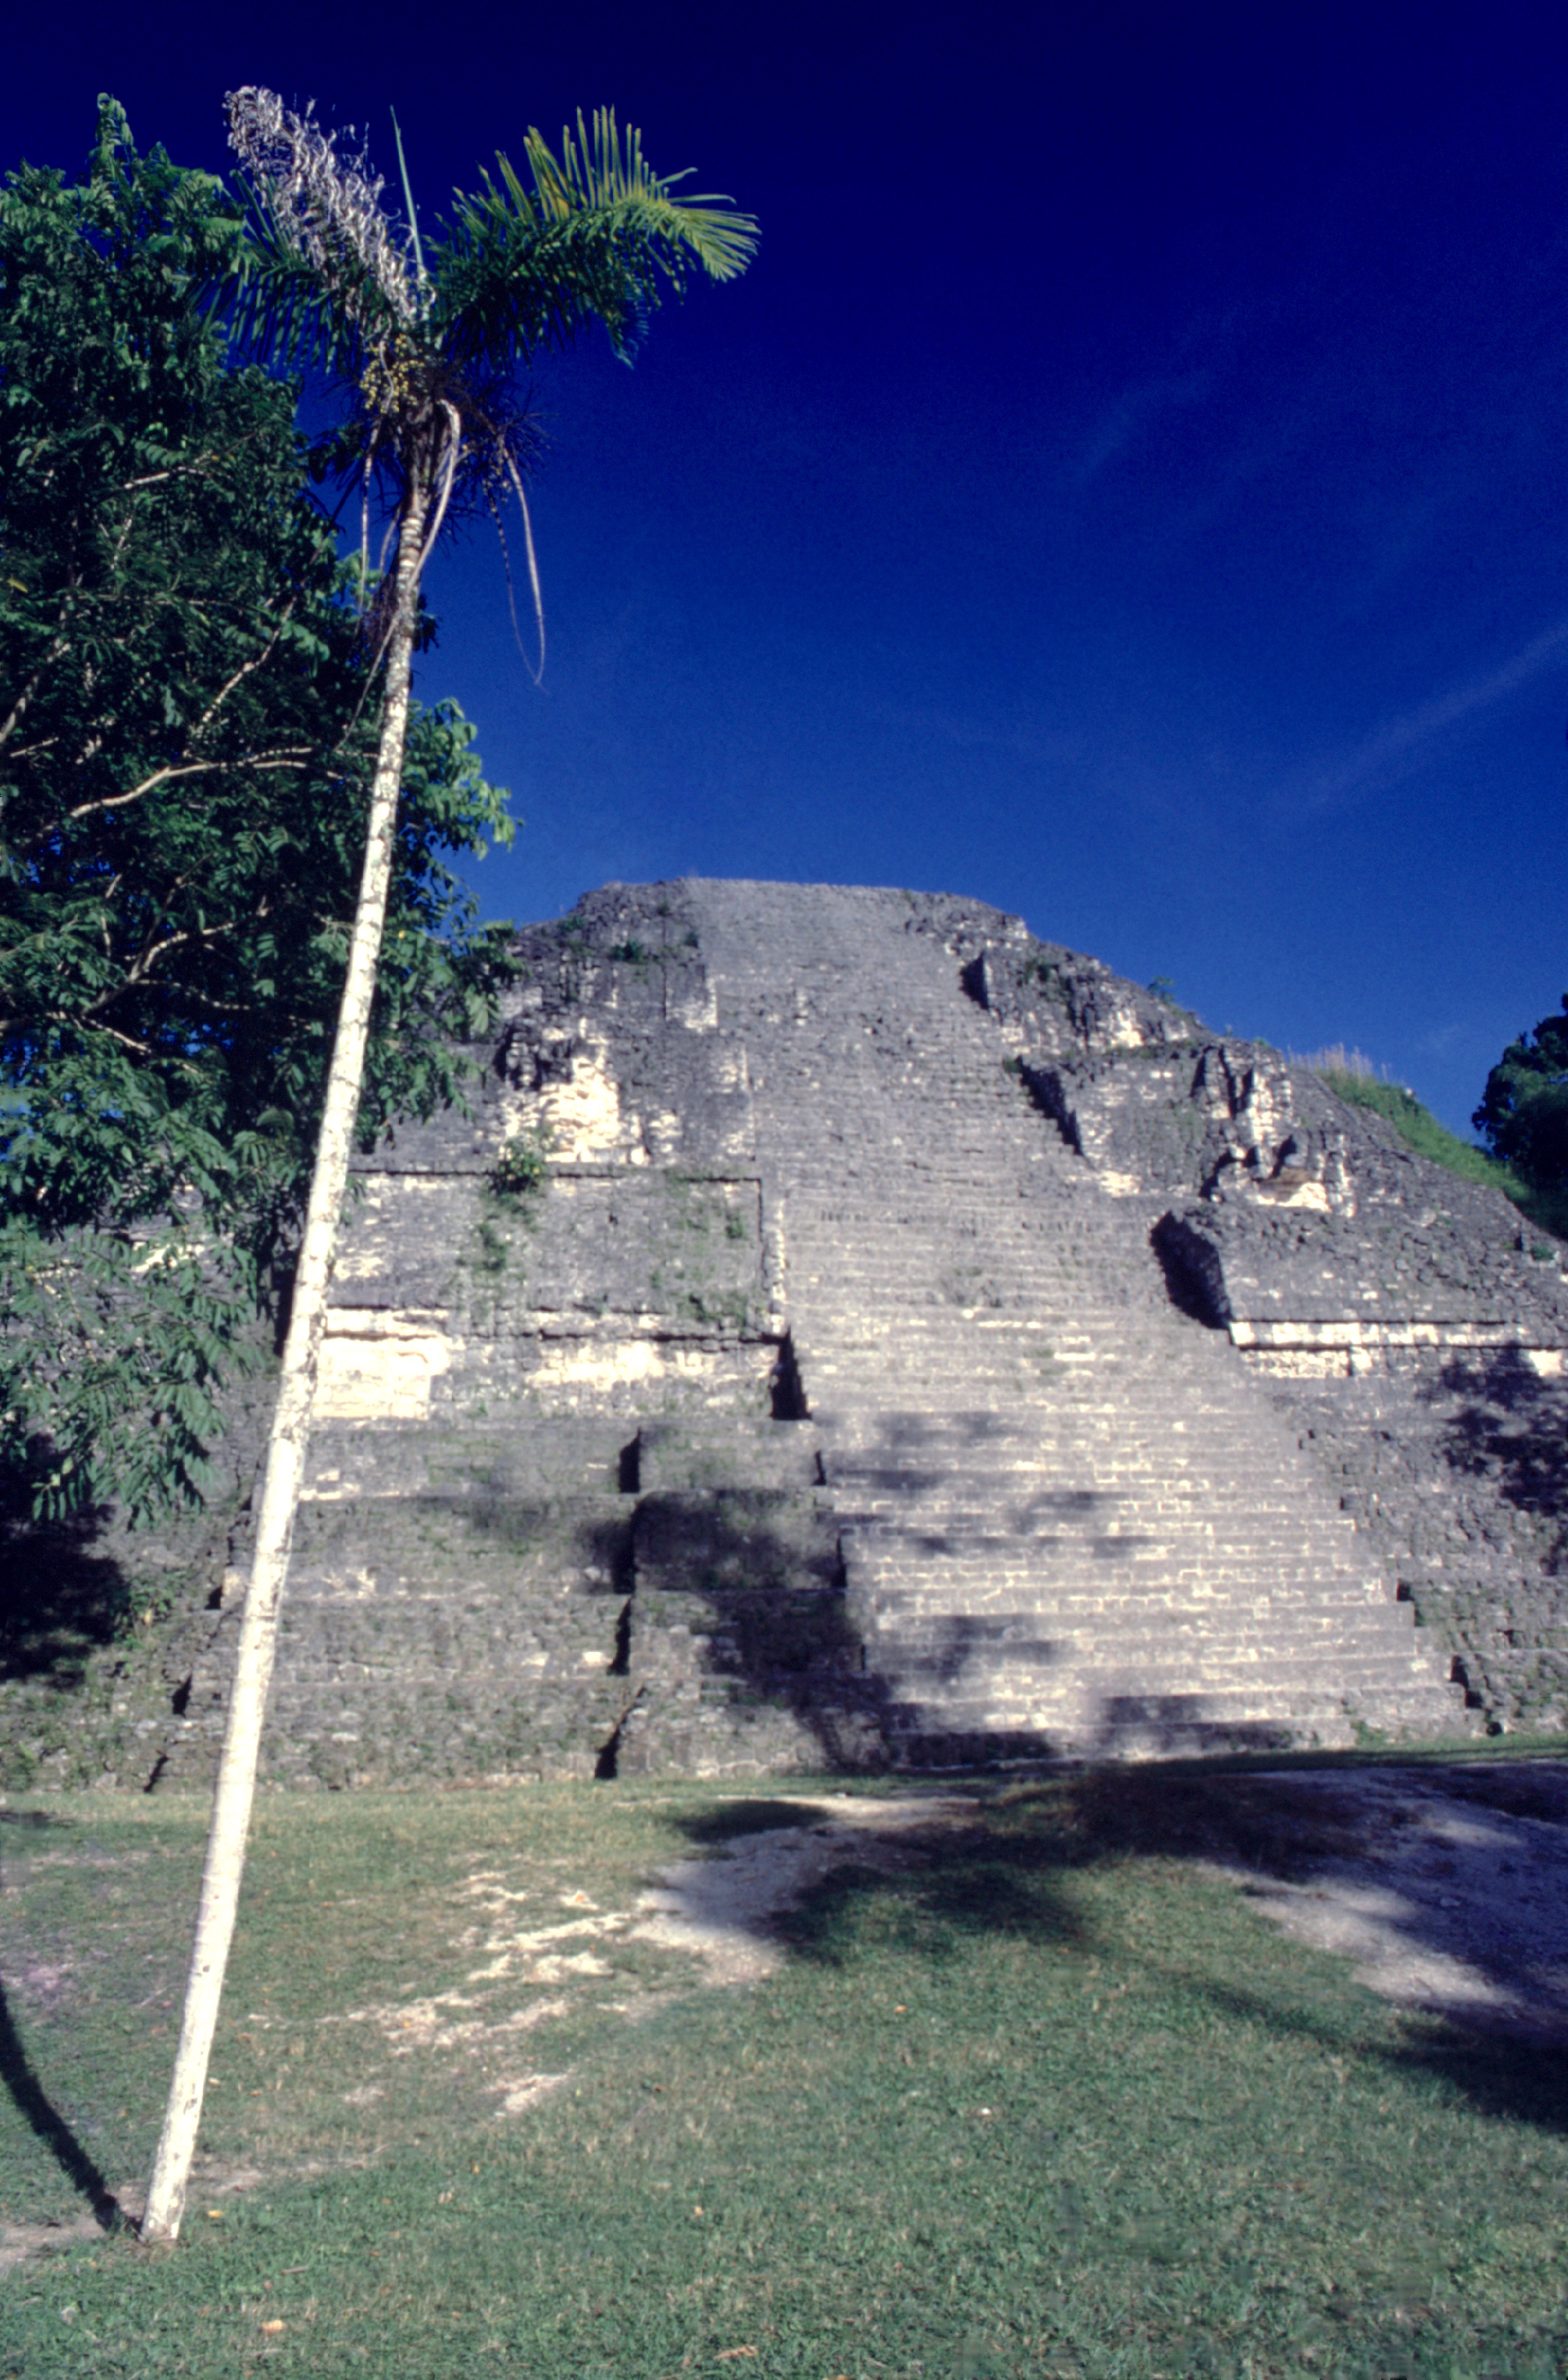 La grande pyramide restaurée (structure 5C) ; il y a quelques décennies, ce n’était qu’un monticule de végétation informe...